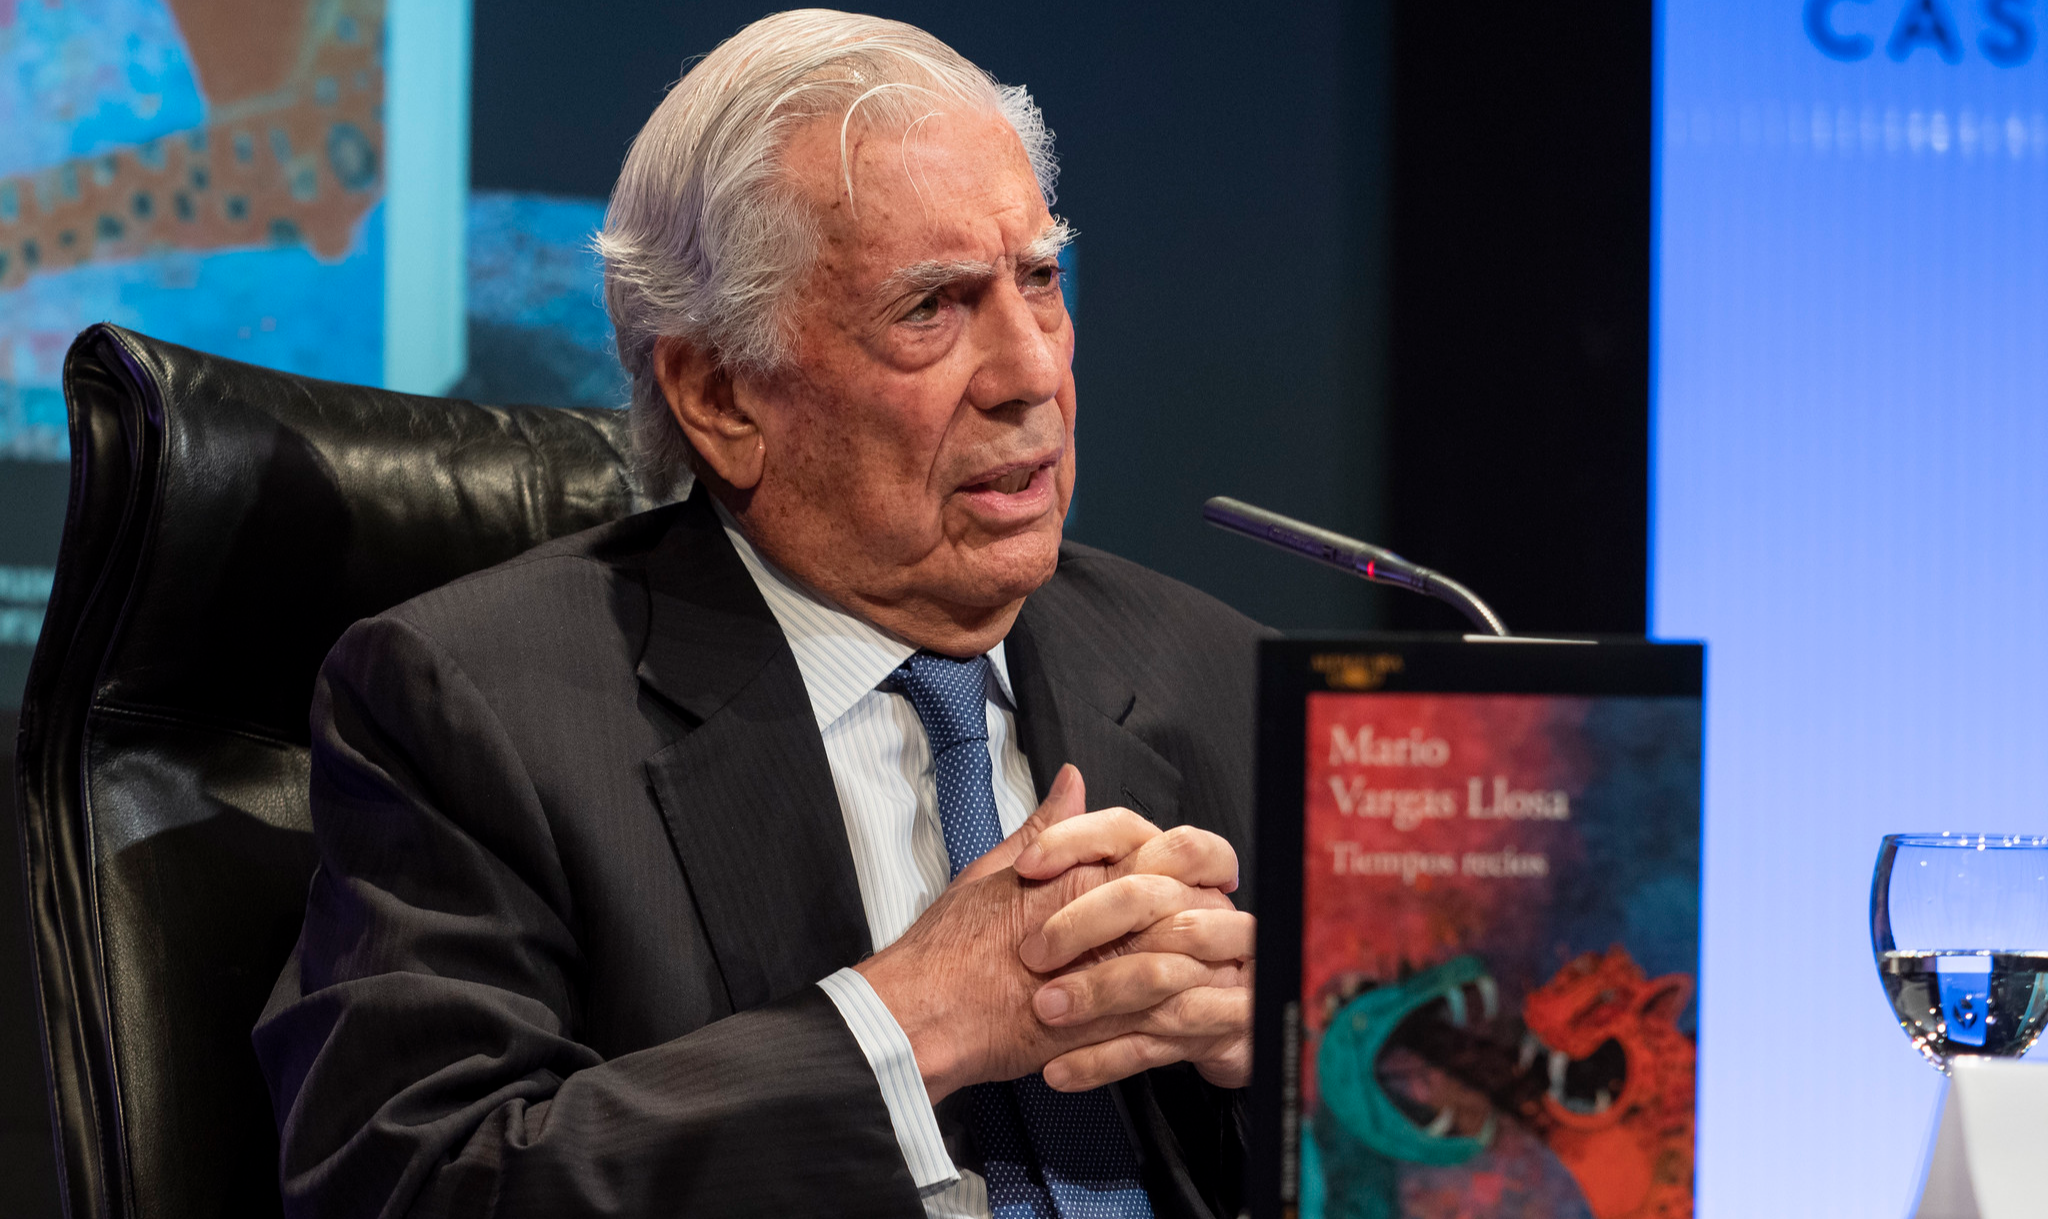 Autor de “O feiticeiro da tribo – A farsa de Mario Vargas Llosa e o liberalismo na América Latina”, que a Autonomia Literária publicará em 2020, expõe como escritor peruano distorce a realidade para apoiar governos milicianos e processos golpistas